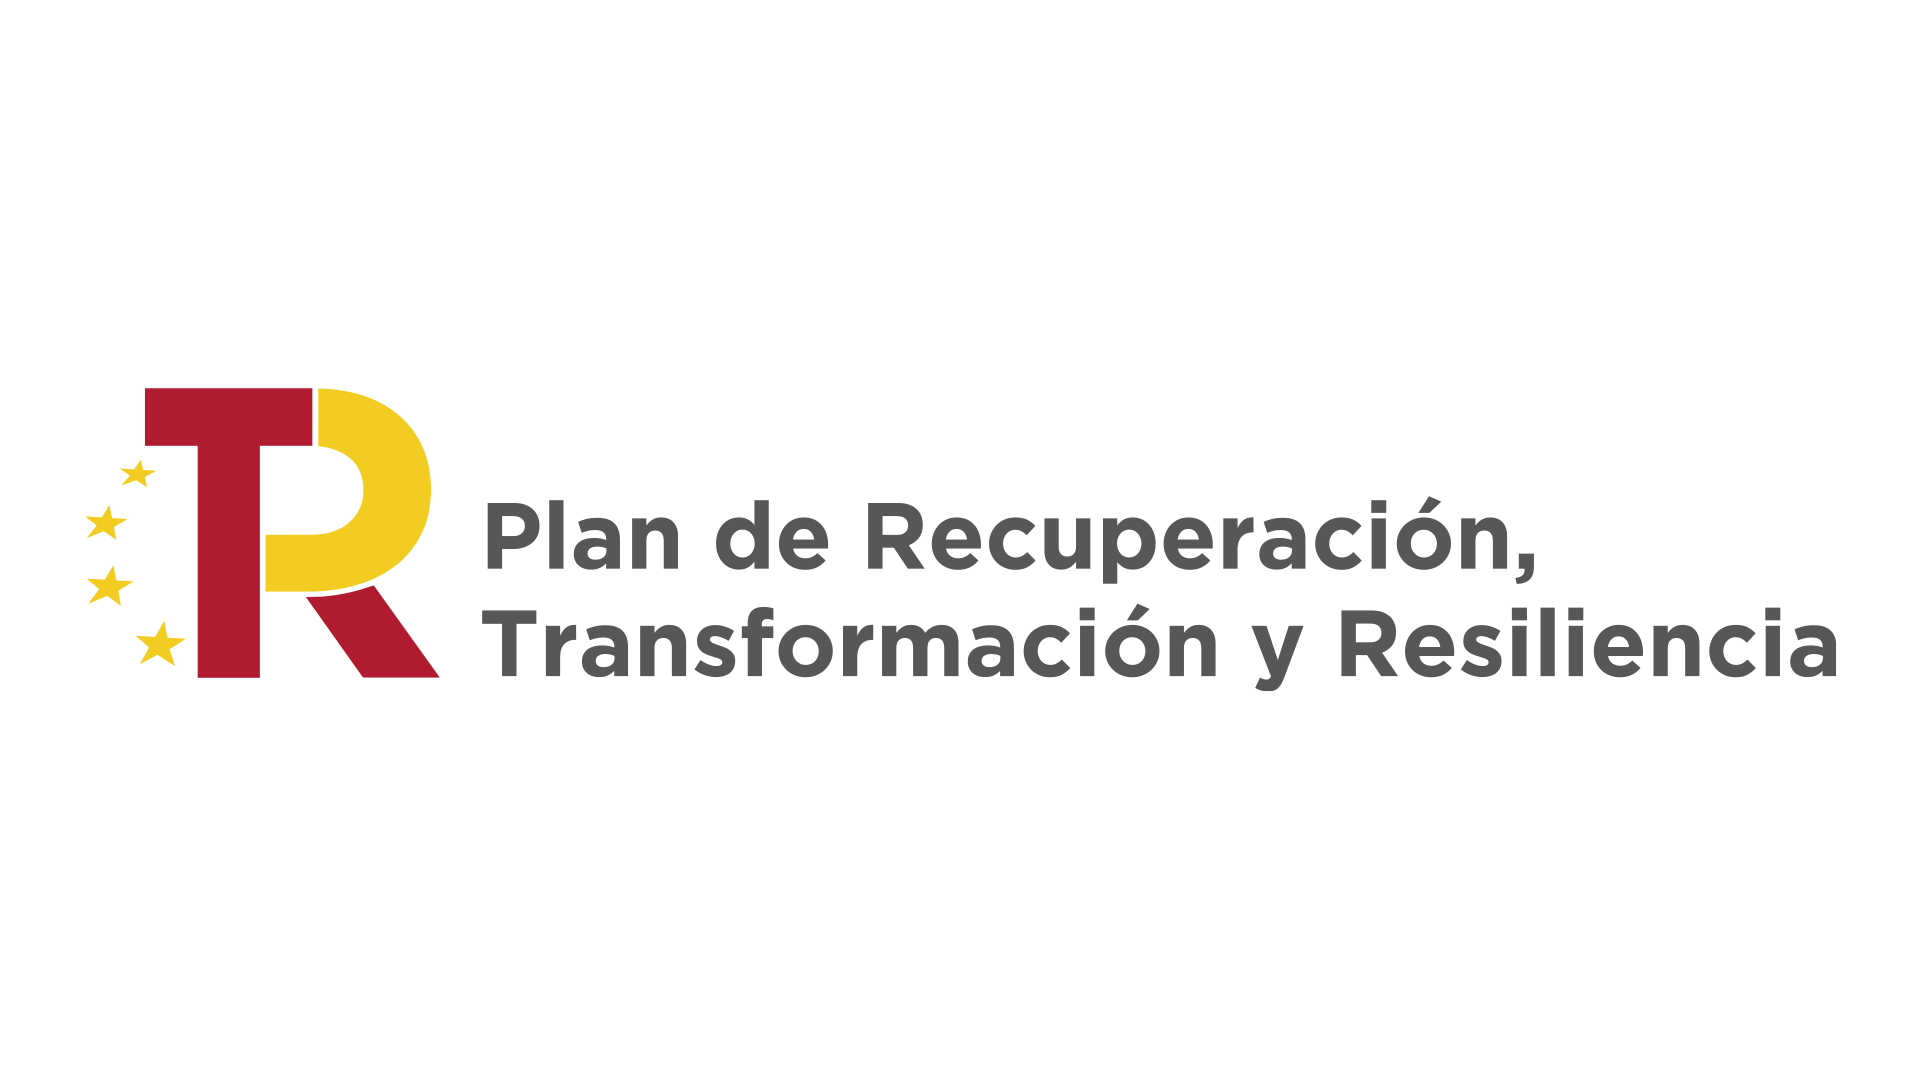 Plan de Recuperación, Transformatción y Resiliencia